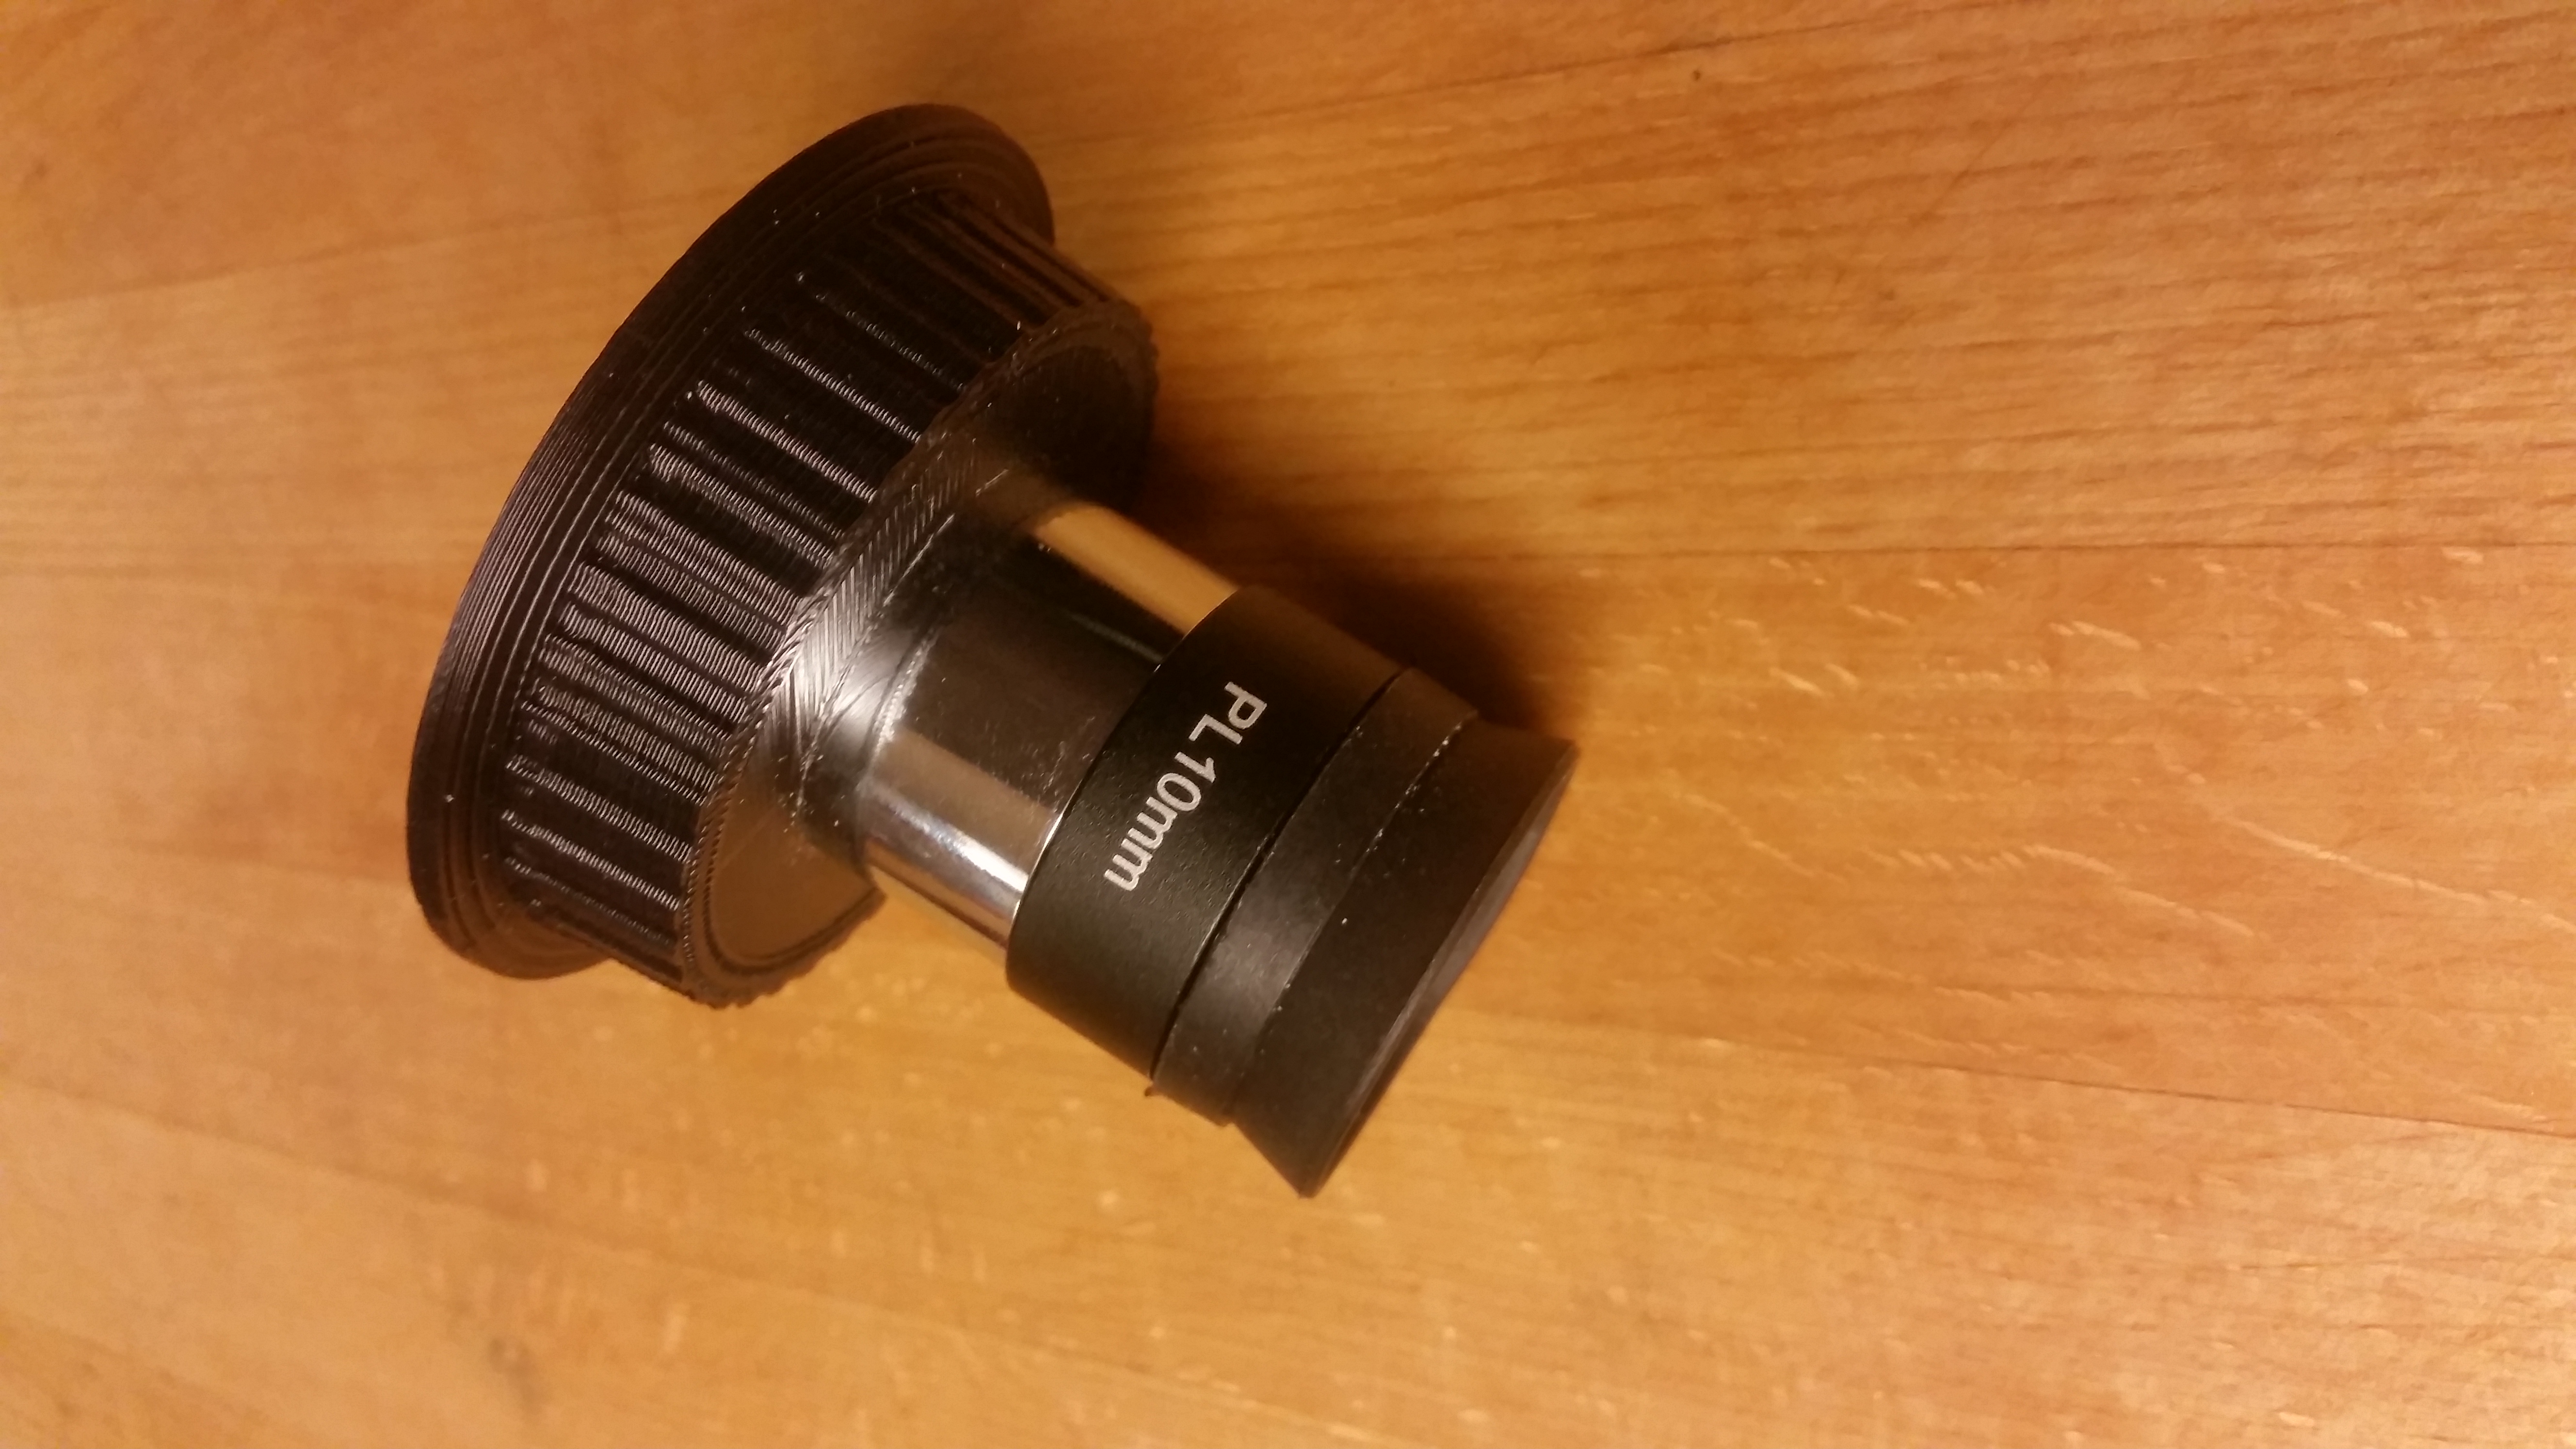 Canon lenscap / telescope 1.25" eyepiece adapter